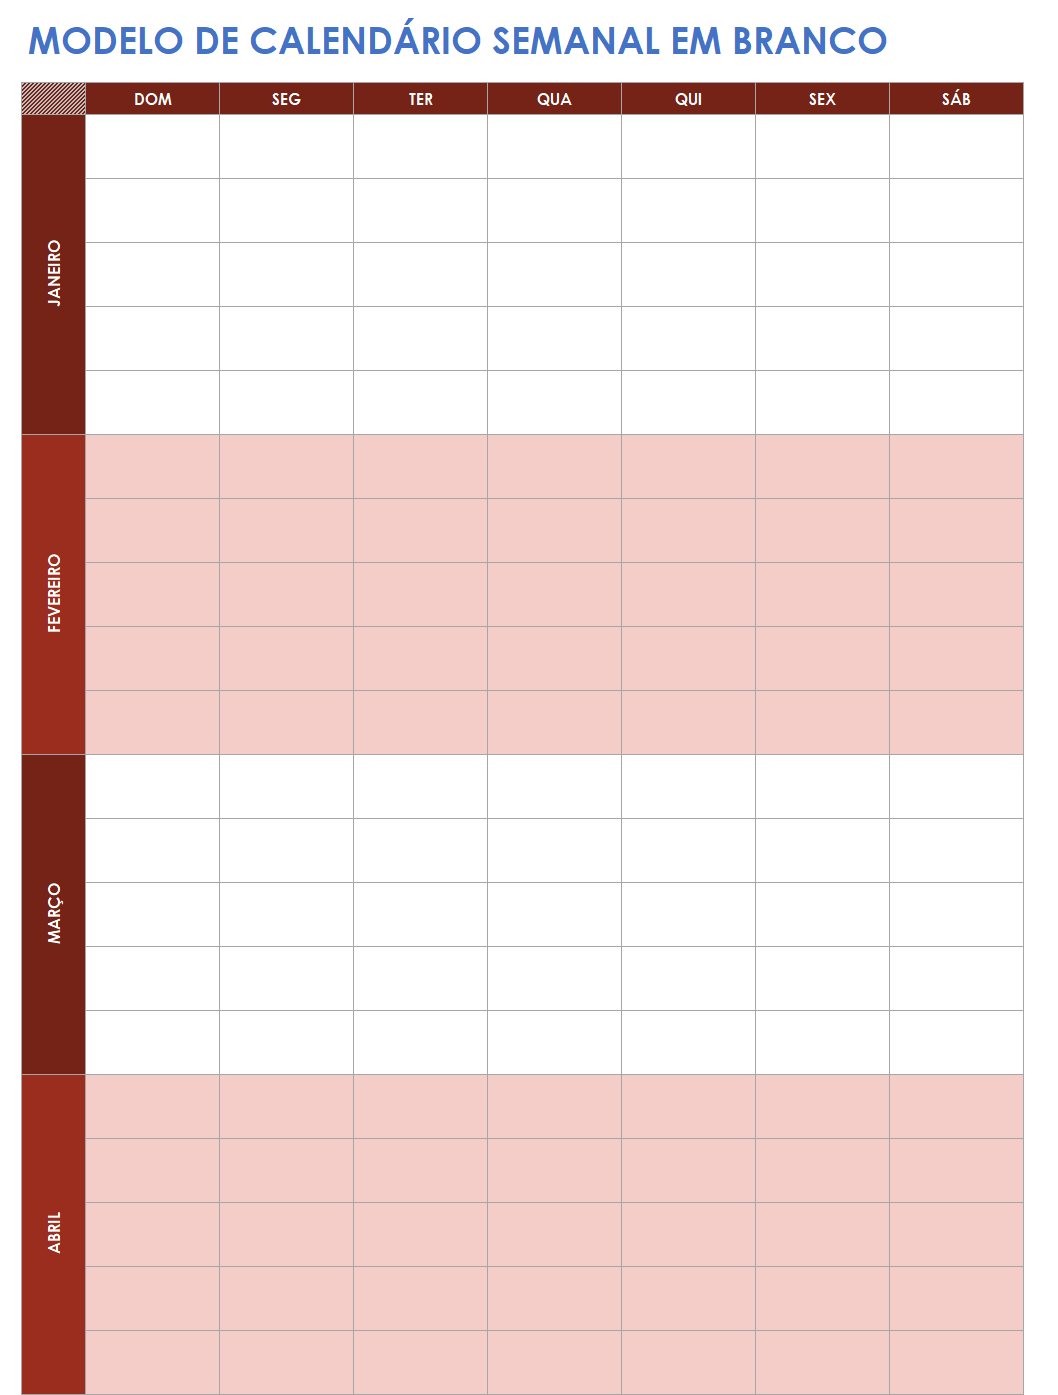 Trabalhar planejamento pessoal calendário semanal em branco